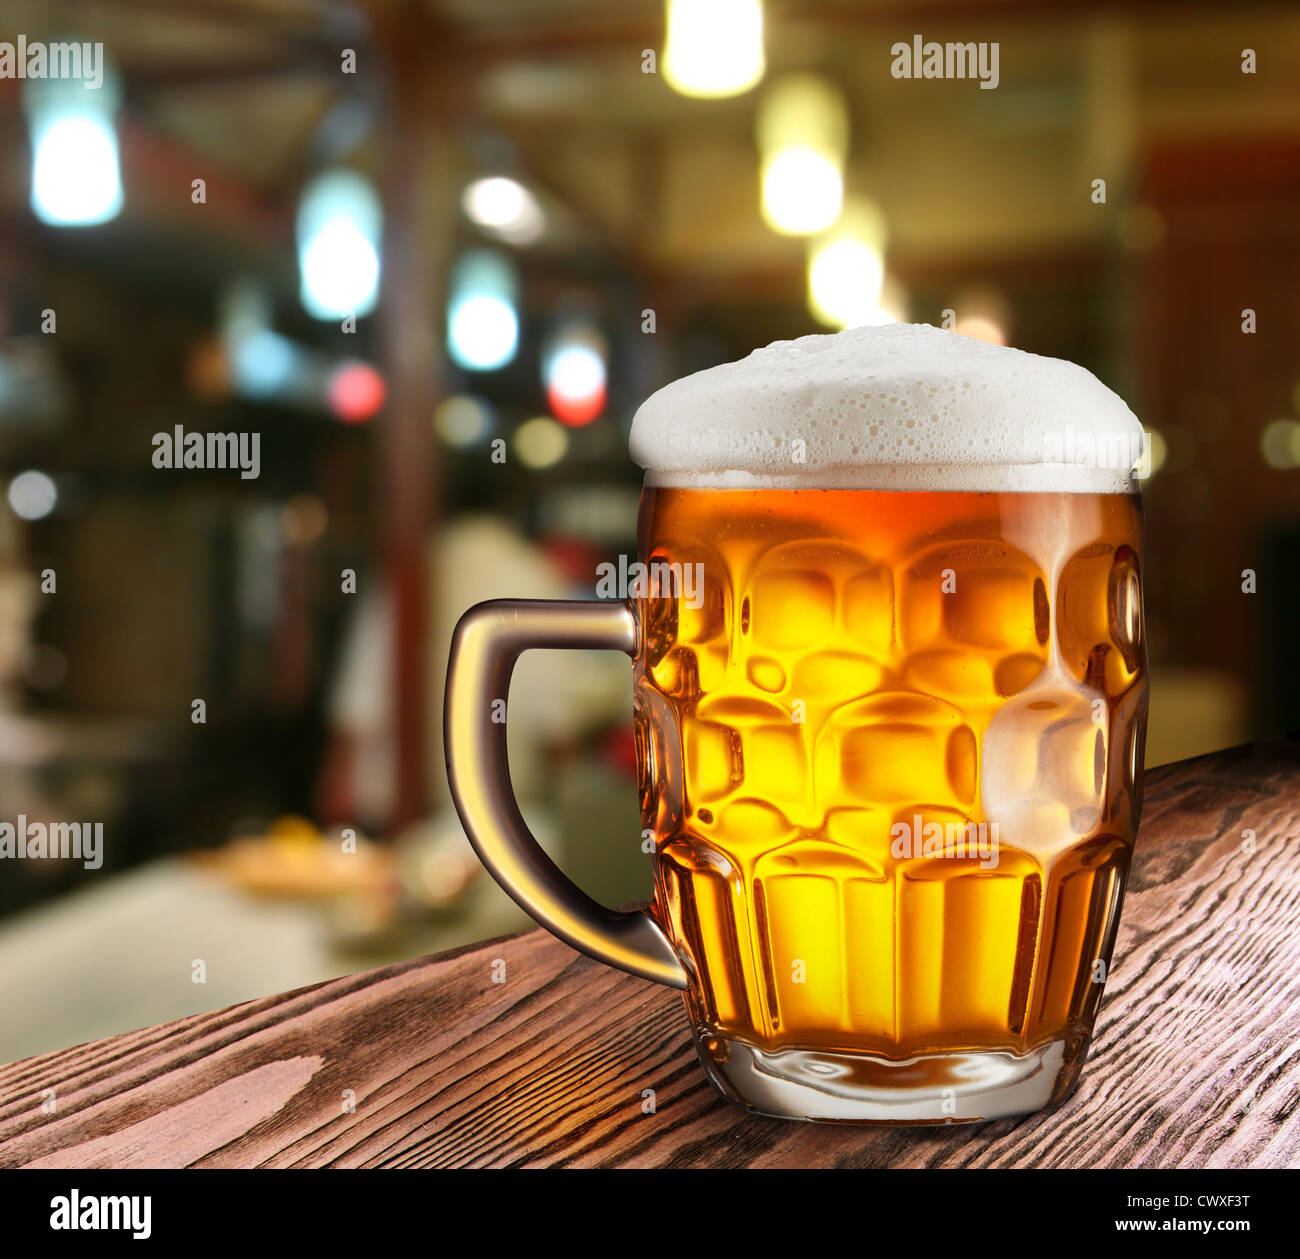 Glas helles Bier auf einer dunklen Kneipe. Stockfoto